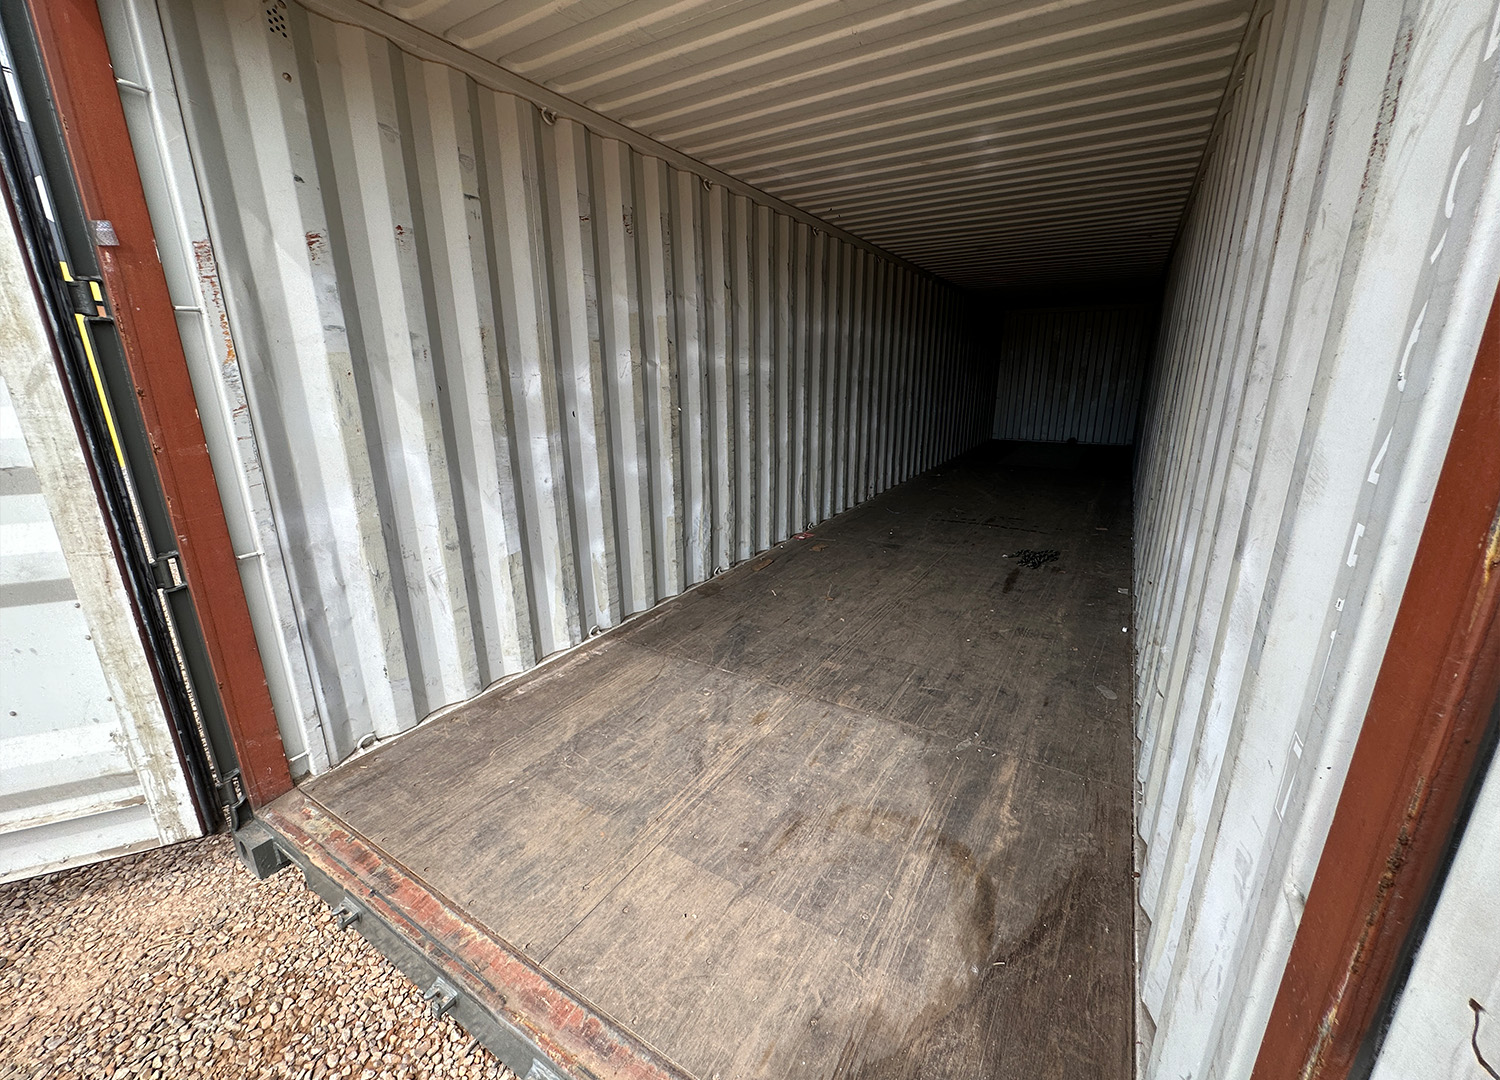 Container 40Pés Standard Dry Cargo (12 Metros) Com 2,60M Altura - Venda